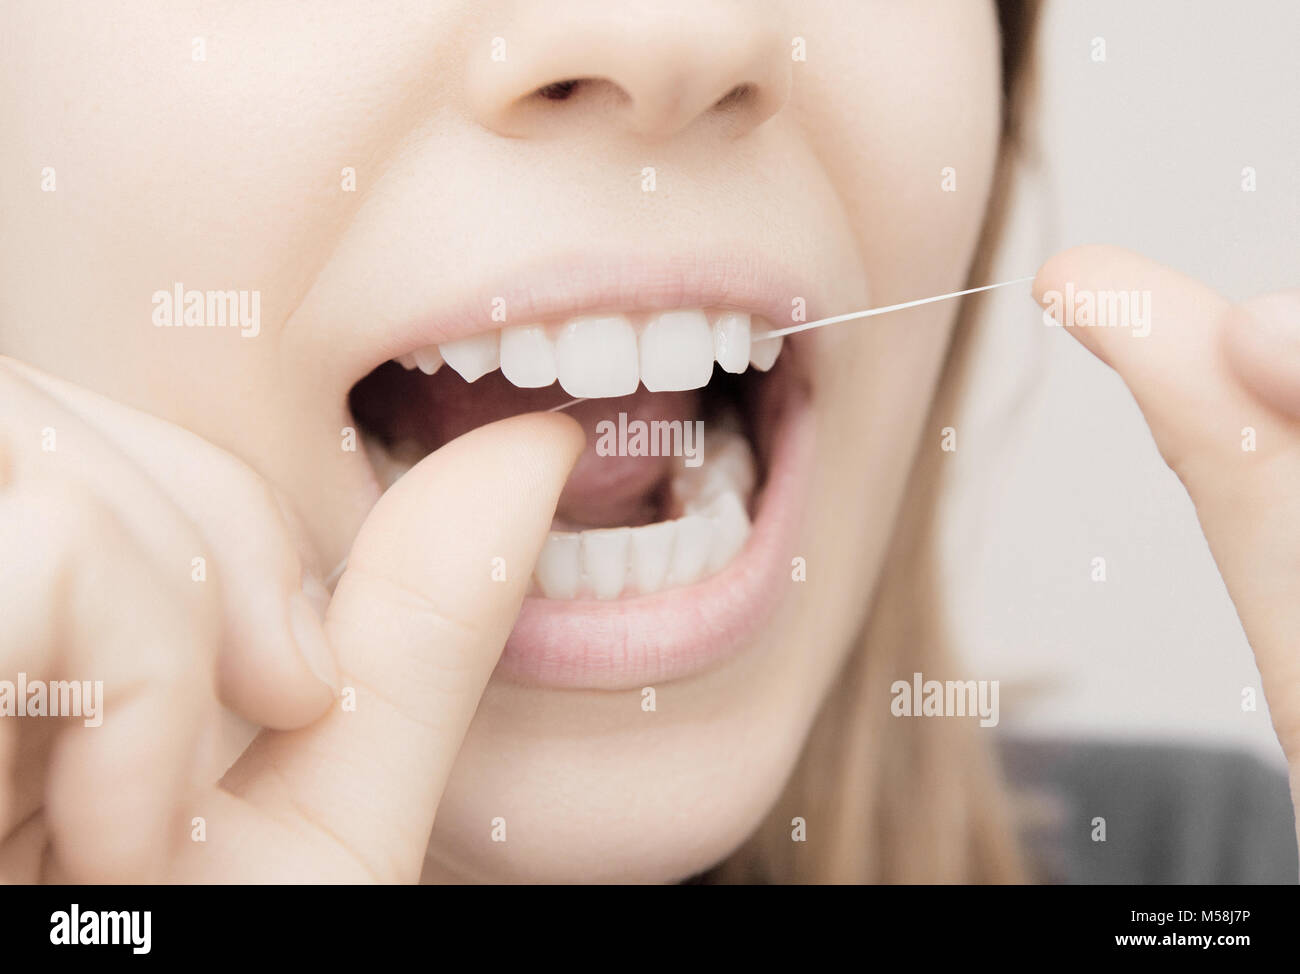 Mujer usa hilo dental en la boca, cuidado dental Foto de stock